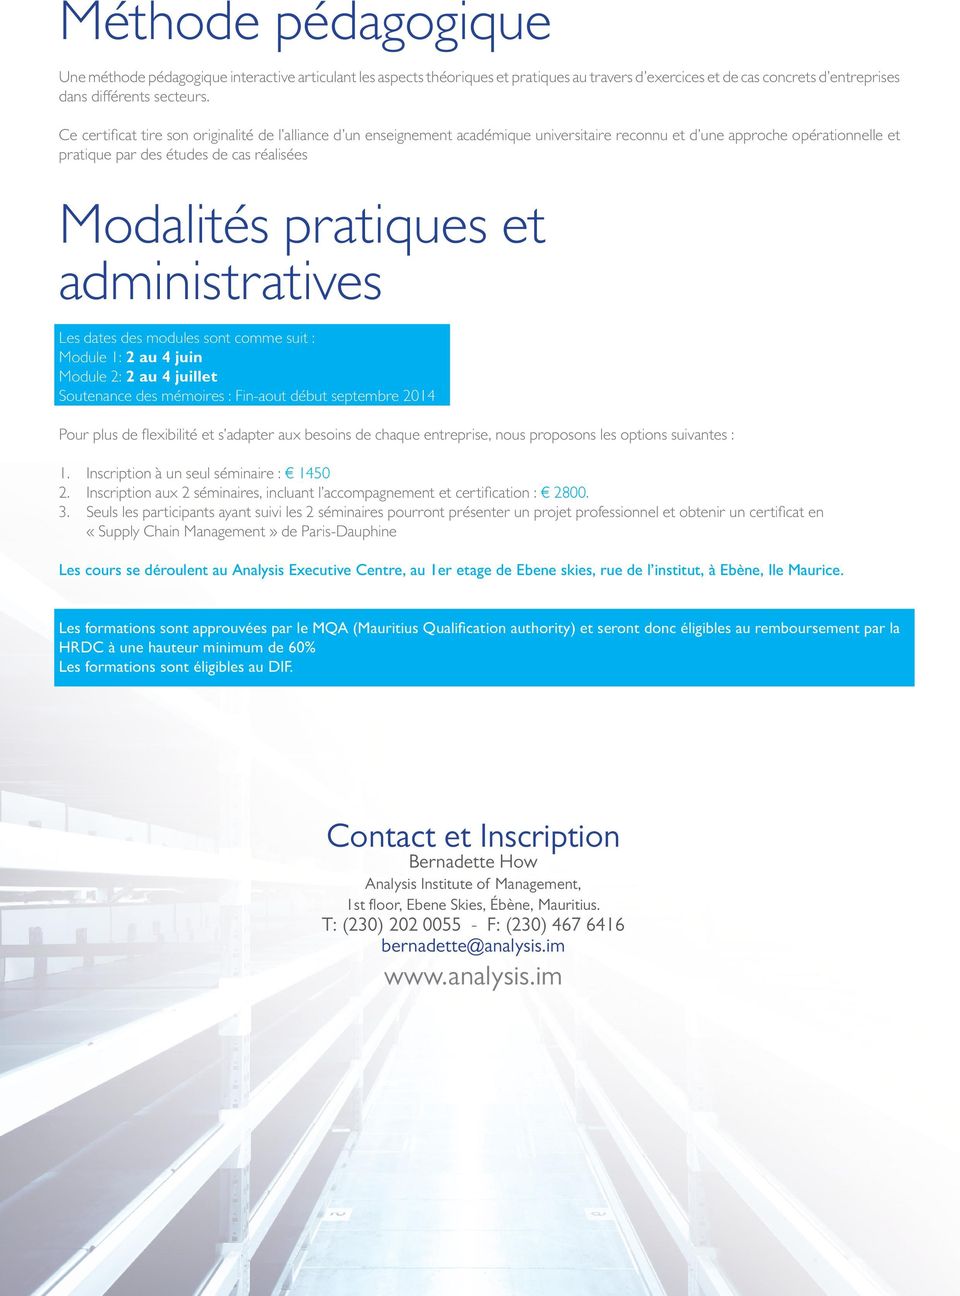 administratives Les dates des modules sont comme suit : Module 1: 2 au 4 juin Module 2: 2 au 4 juillet Soutenance des mémoires : Fin-aout début septembre 2014 Pour plus de flexibilité et s adapter